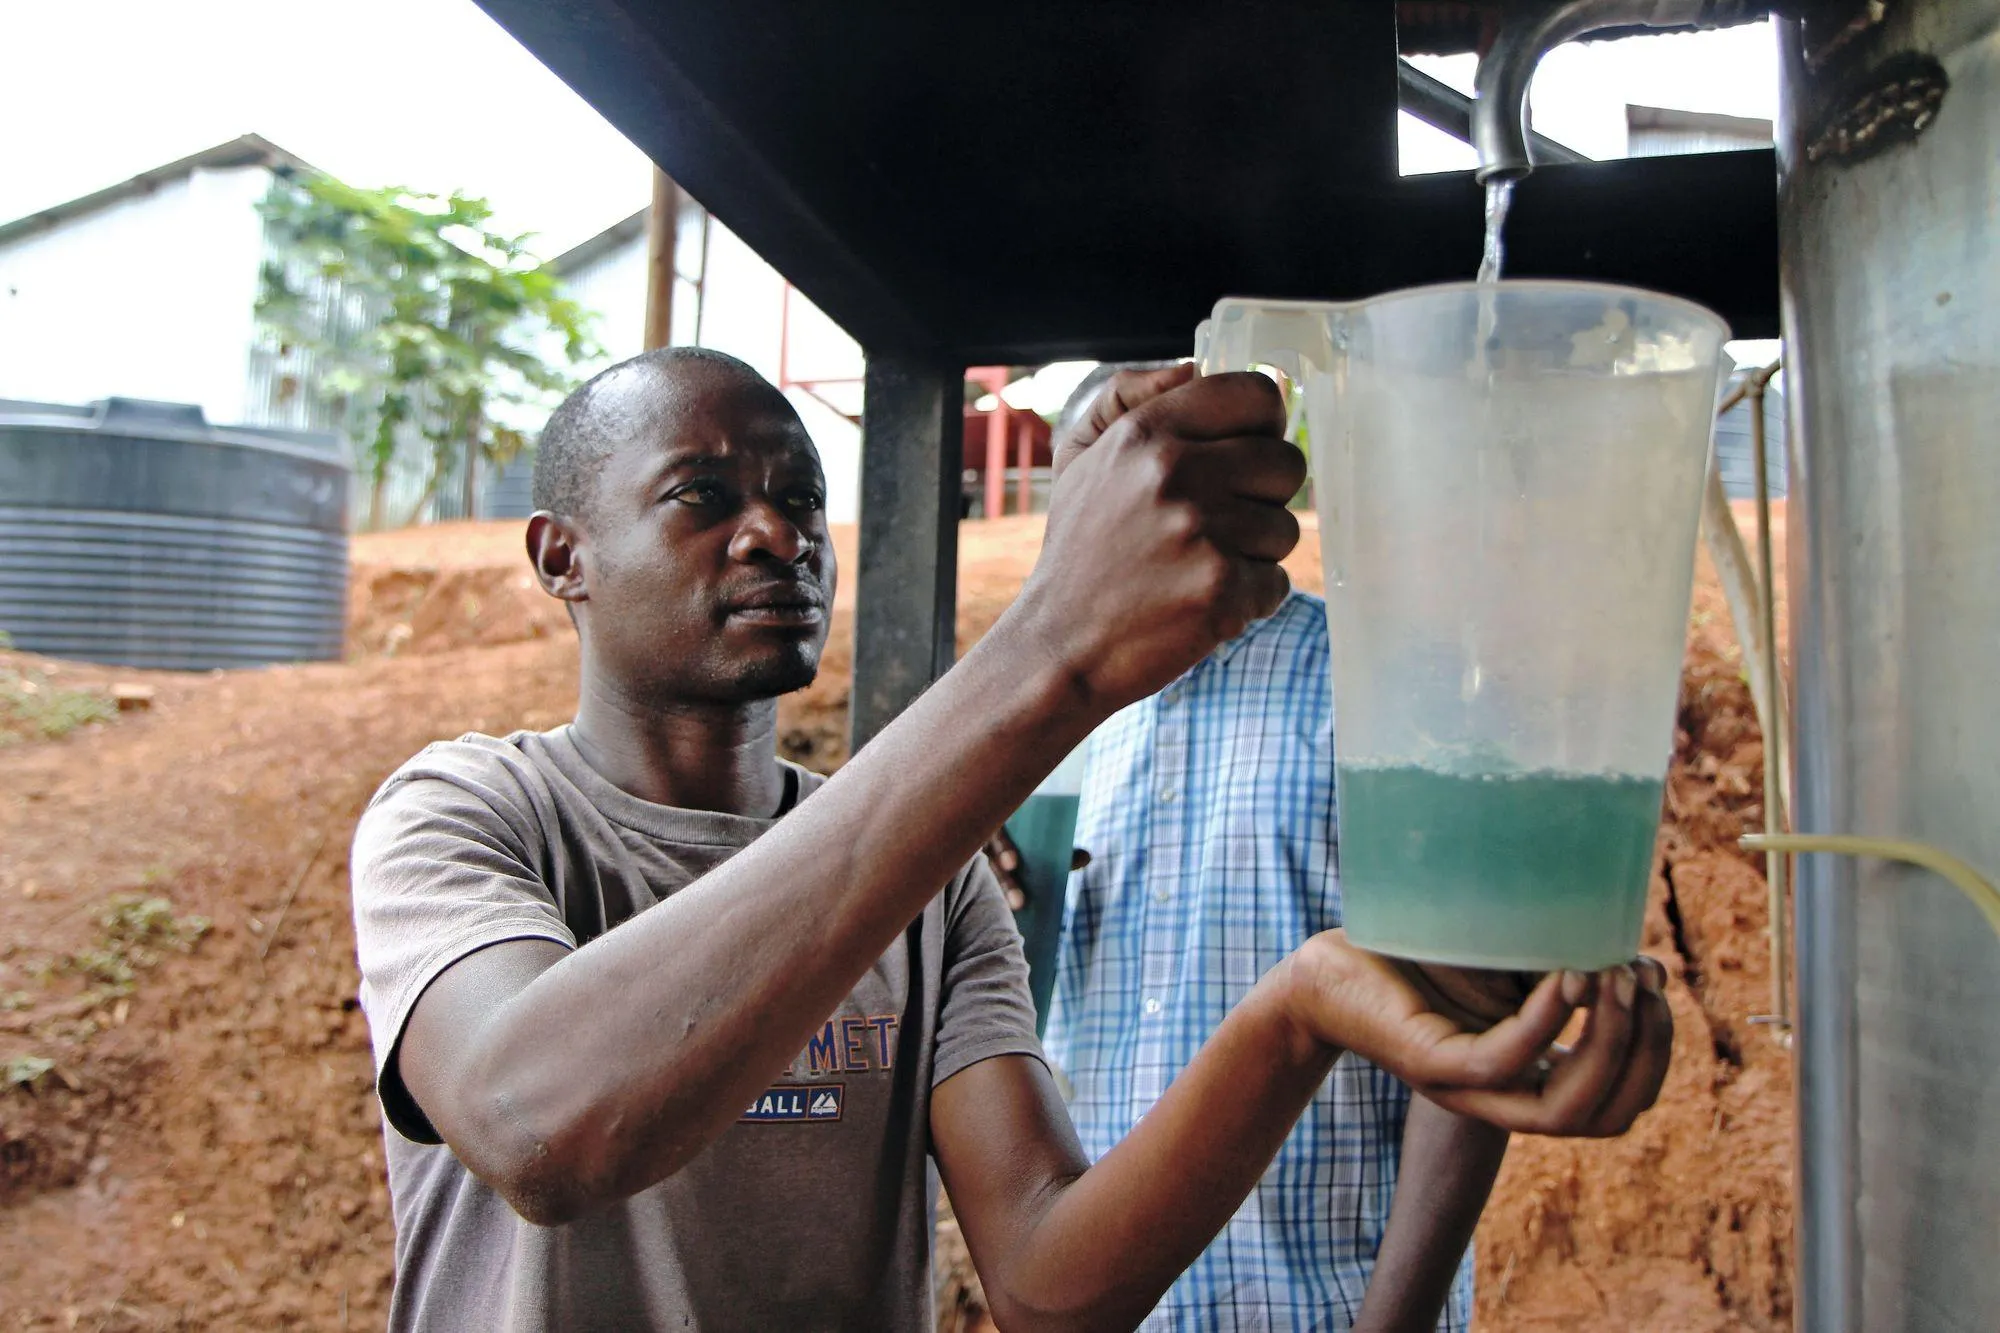 Le développement d'une petite industrie exportatrice
au Rwanda autour de l'extraction d'huiles essentielles